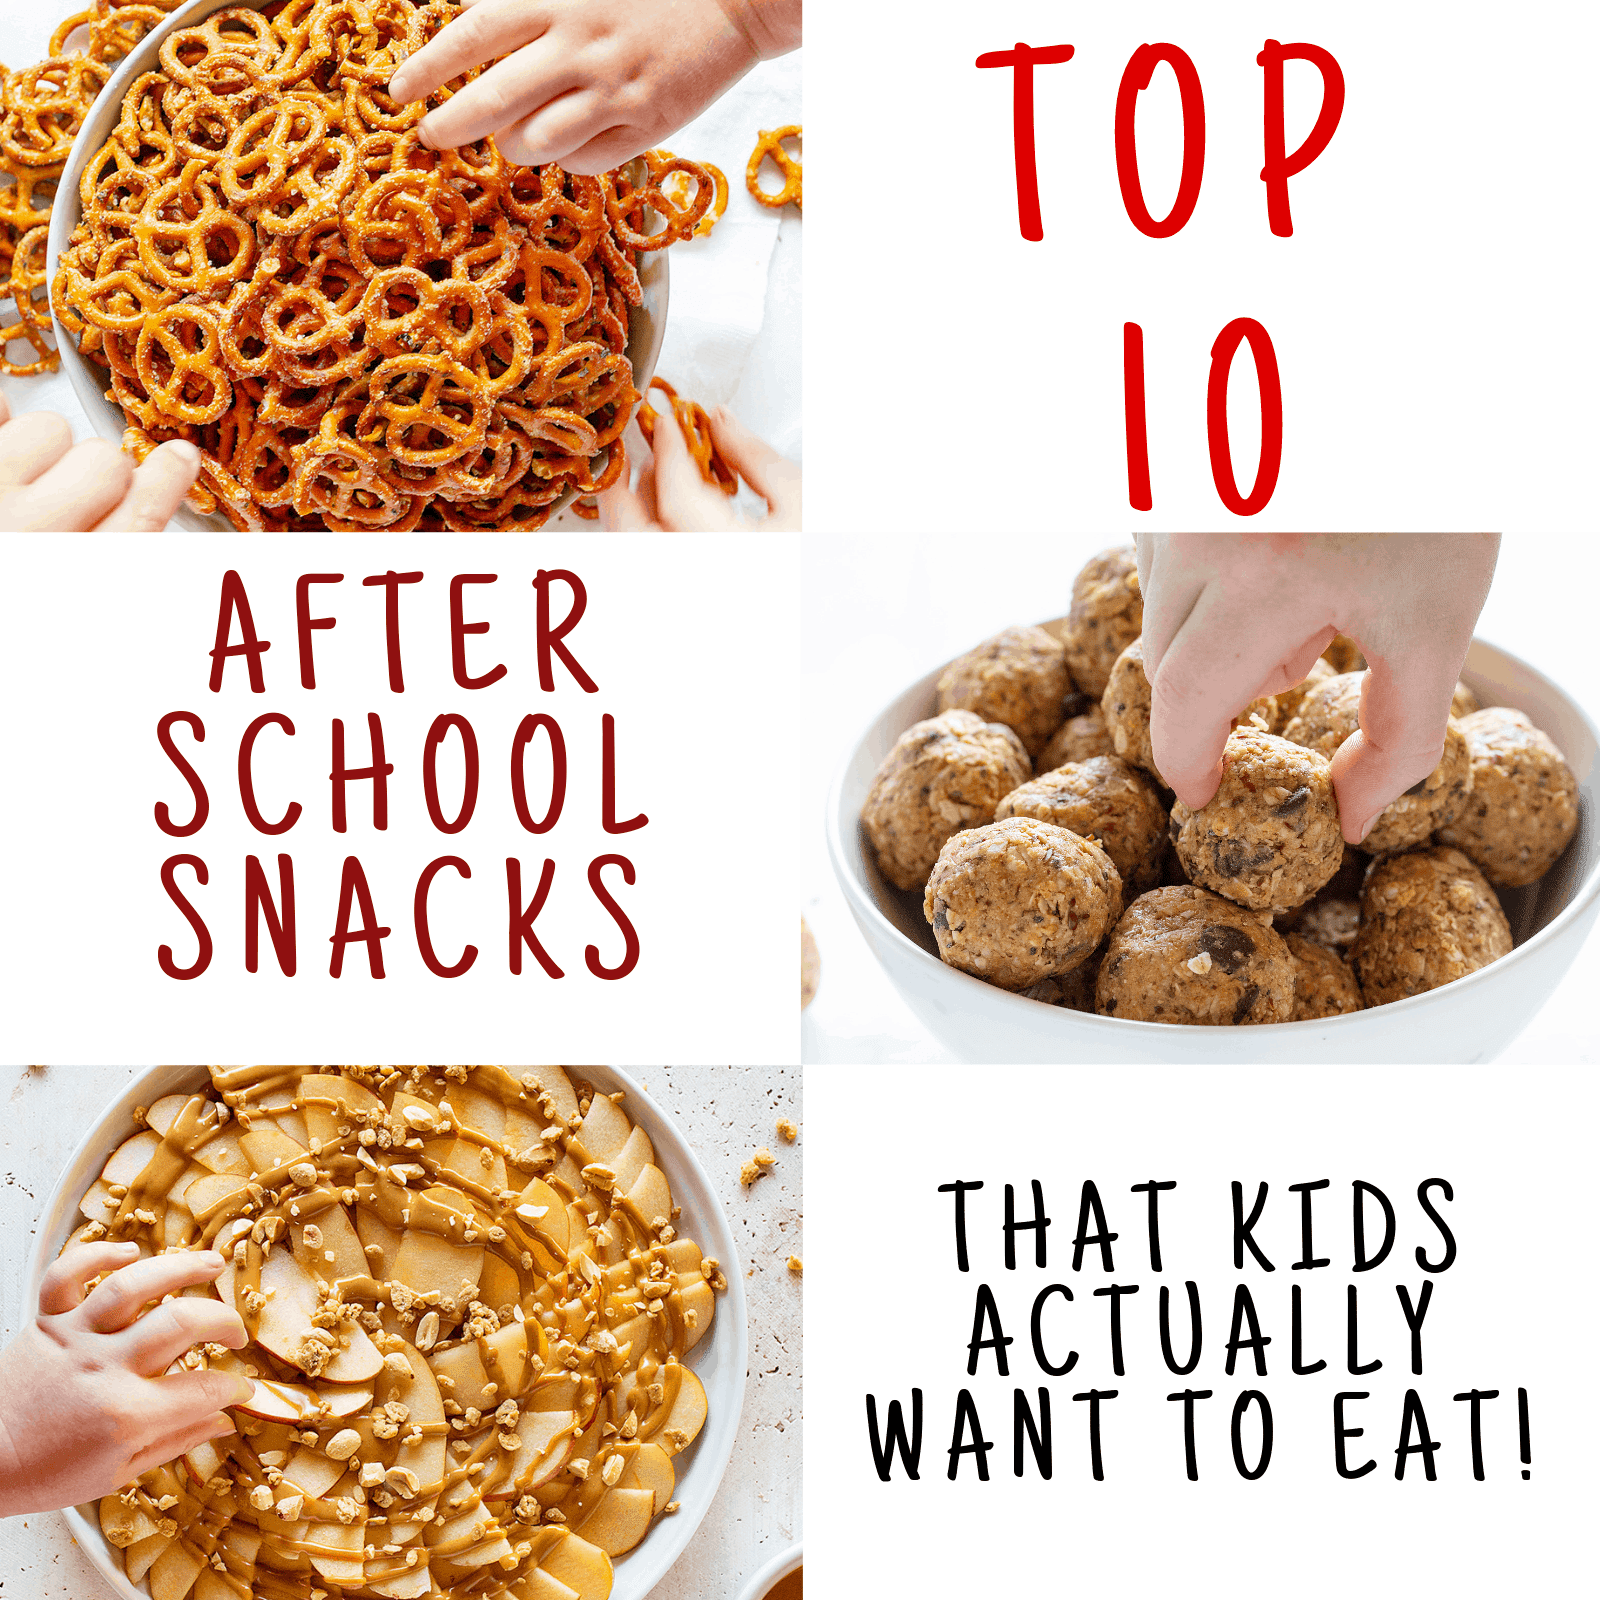 Top 10 After School Snacks